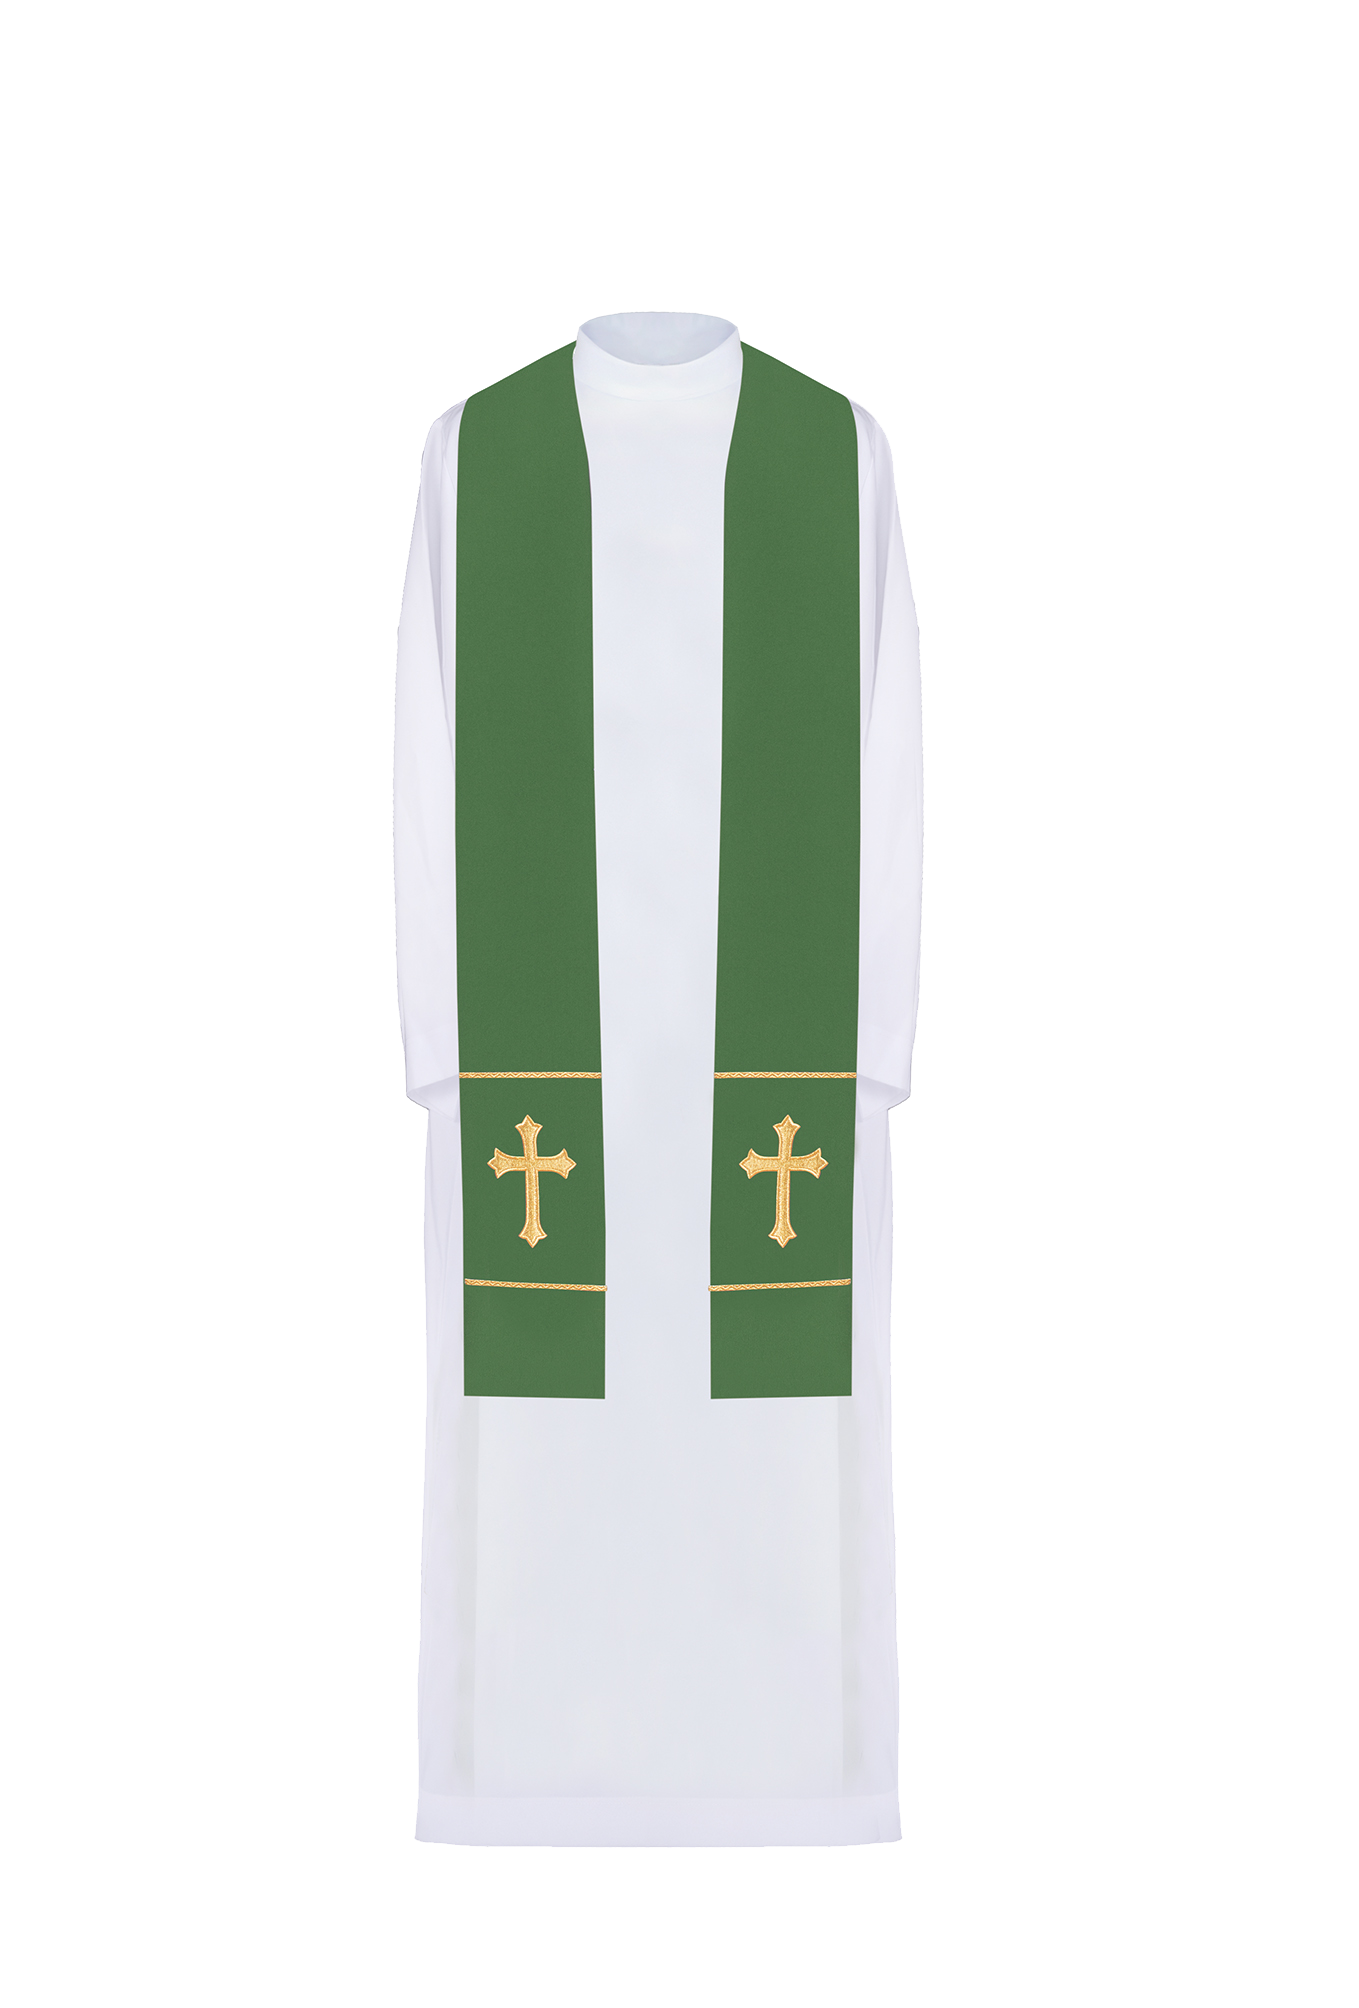 Stuła kapłańska zielona haftowana Krzyż